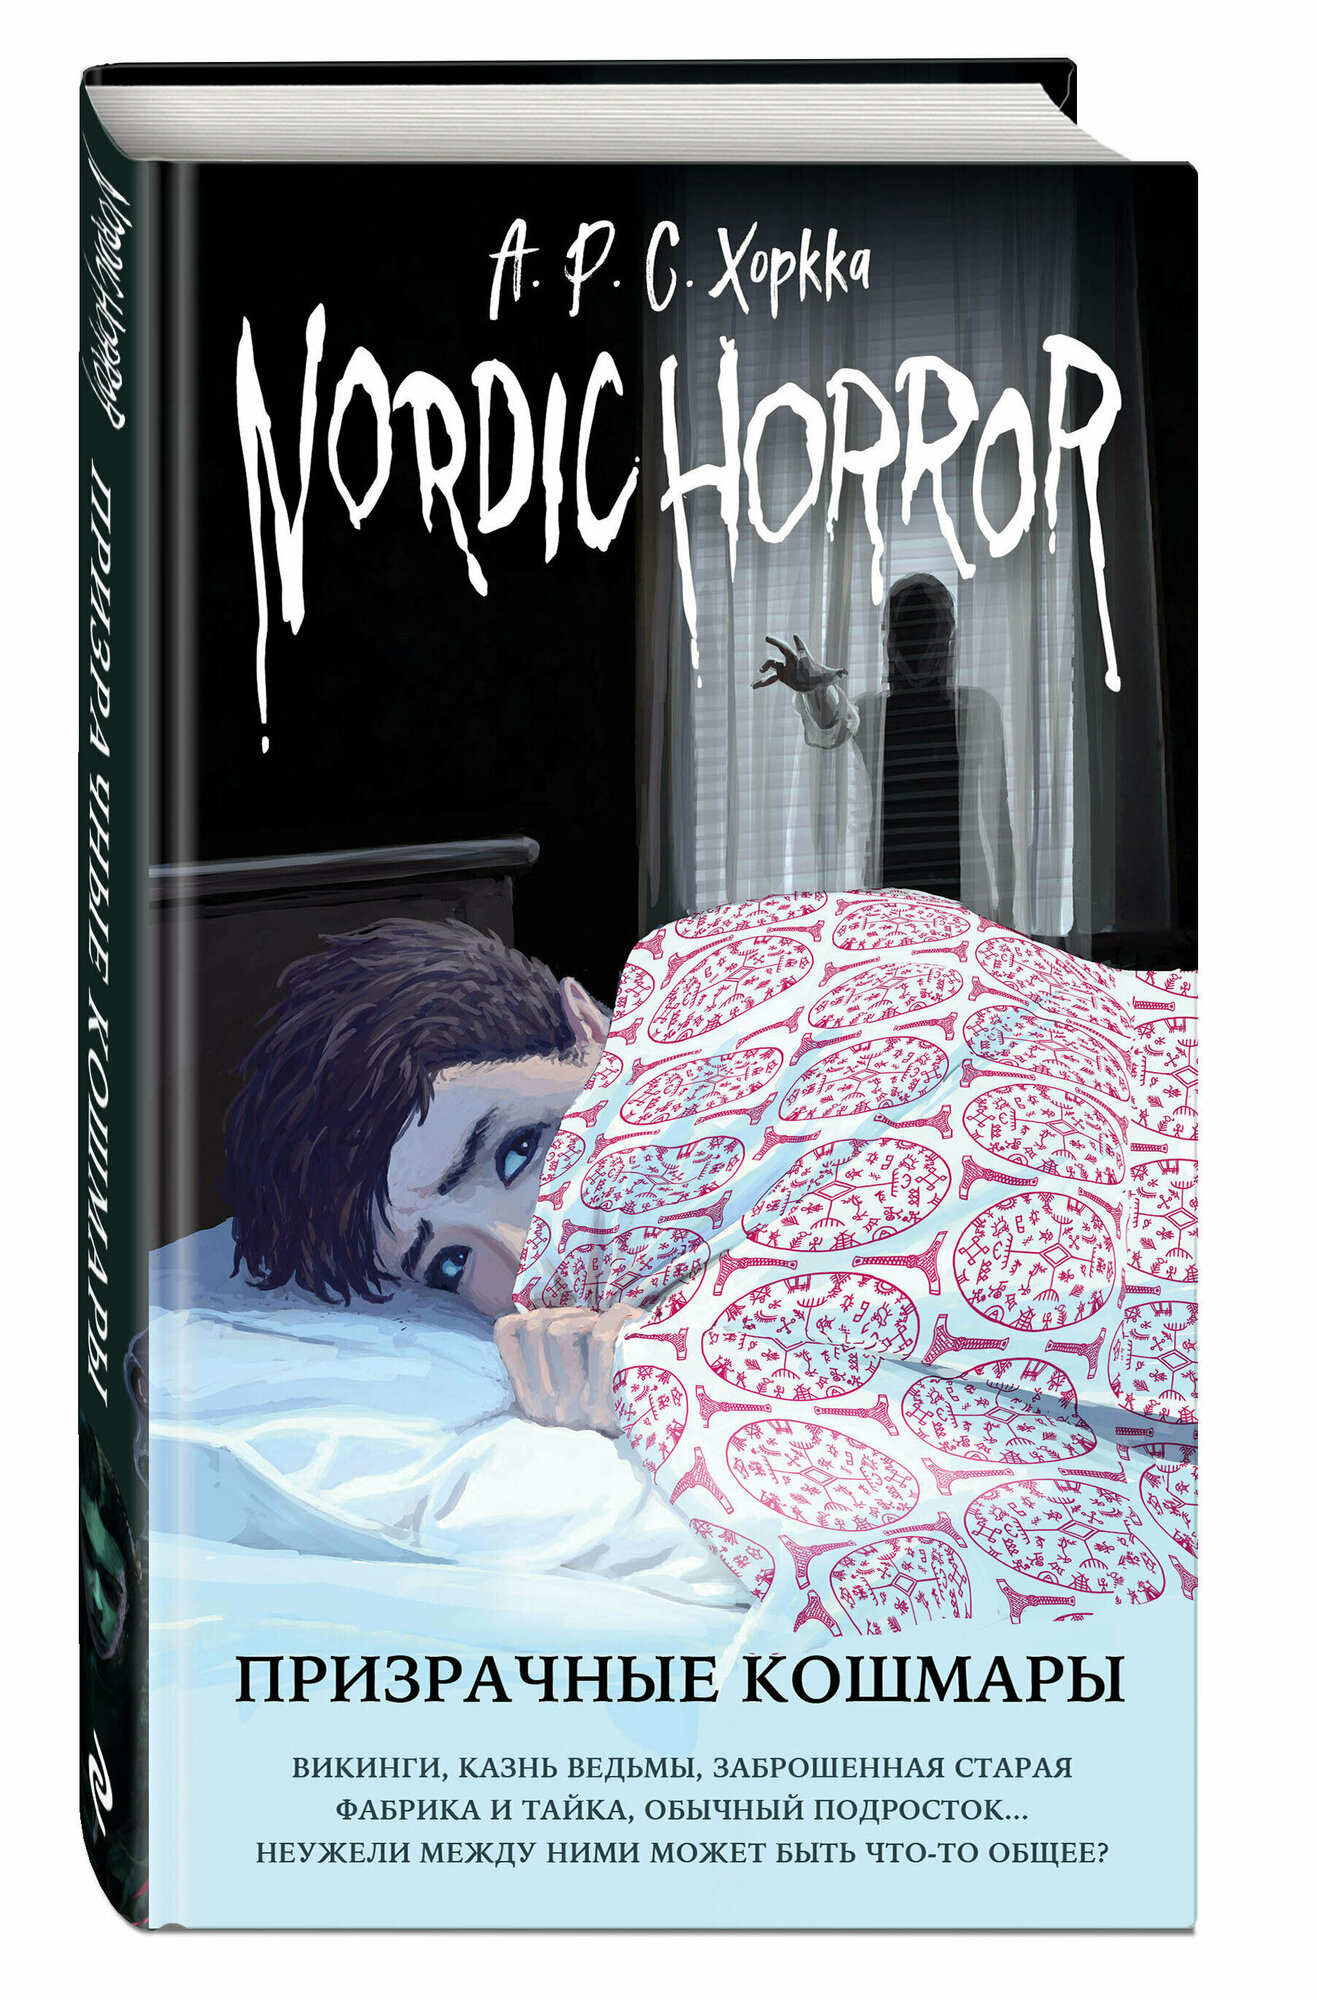 Хоркка А. Р. С. Nordic Horror. Призрачные кошмары (выпуск 3)